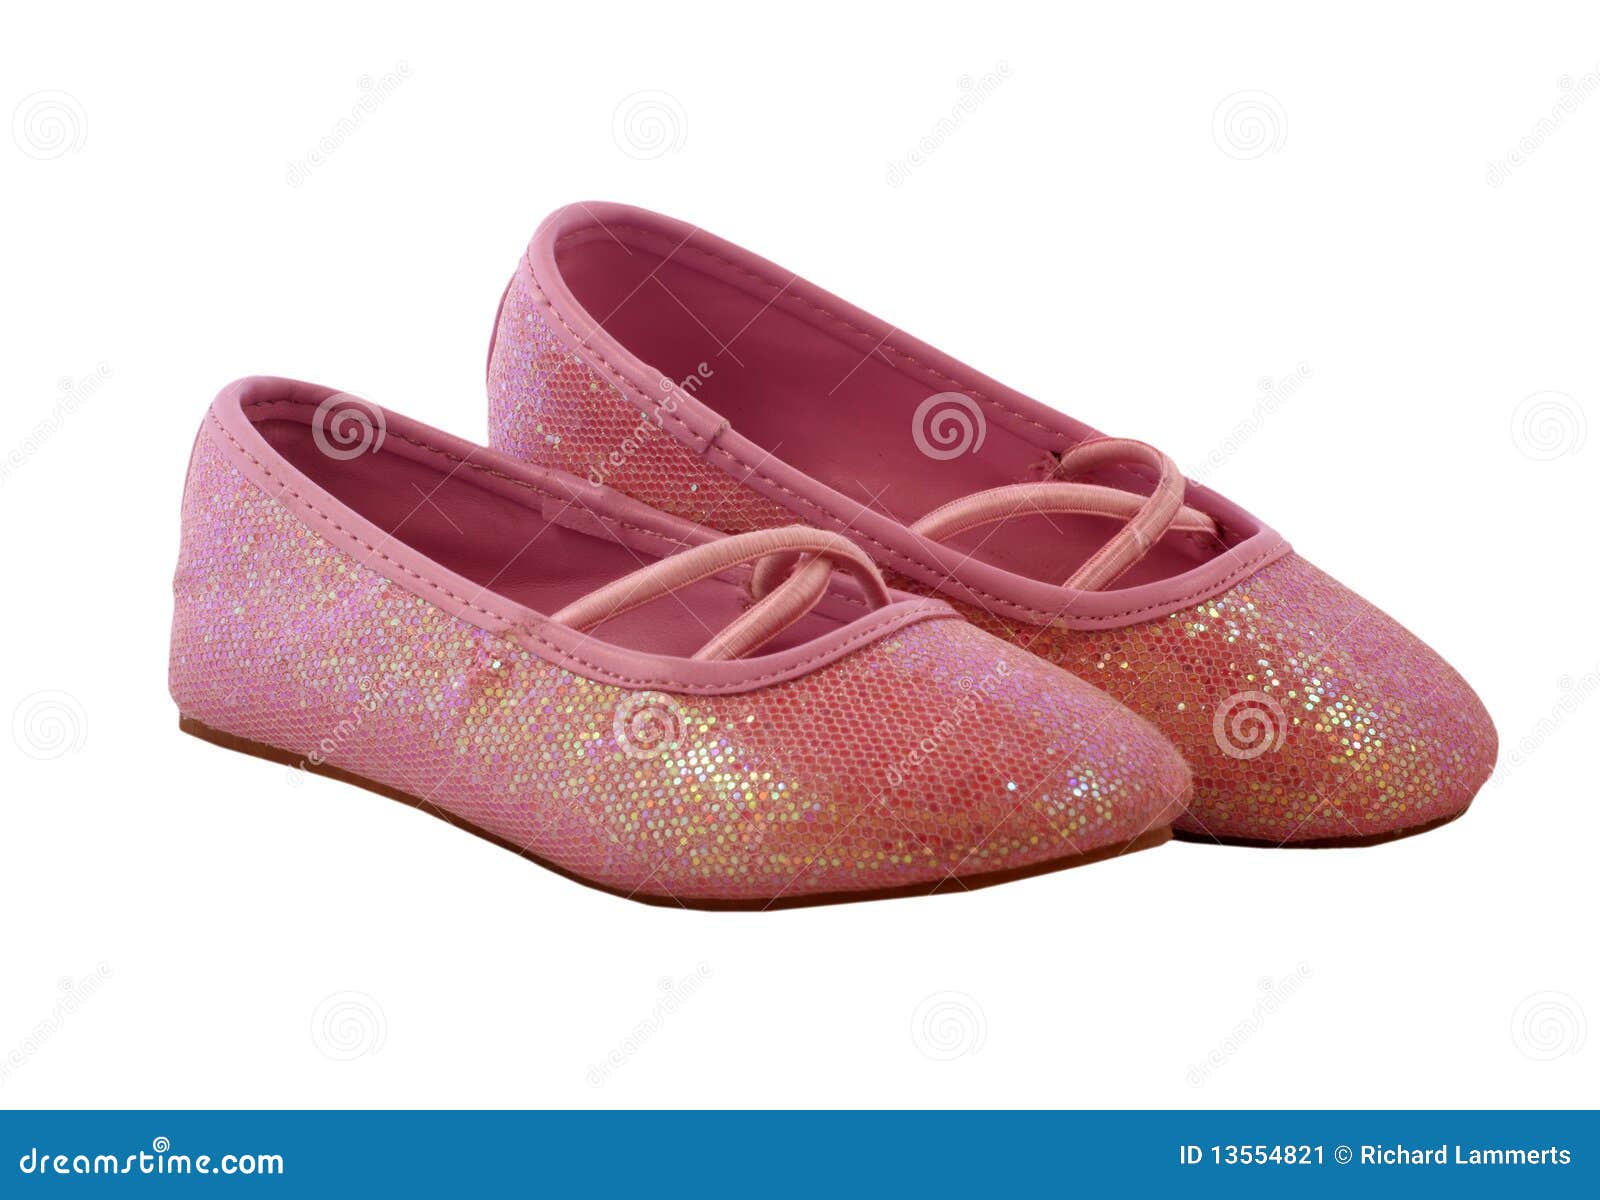 princes shoes